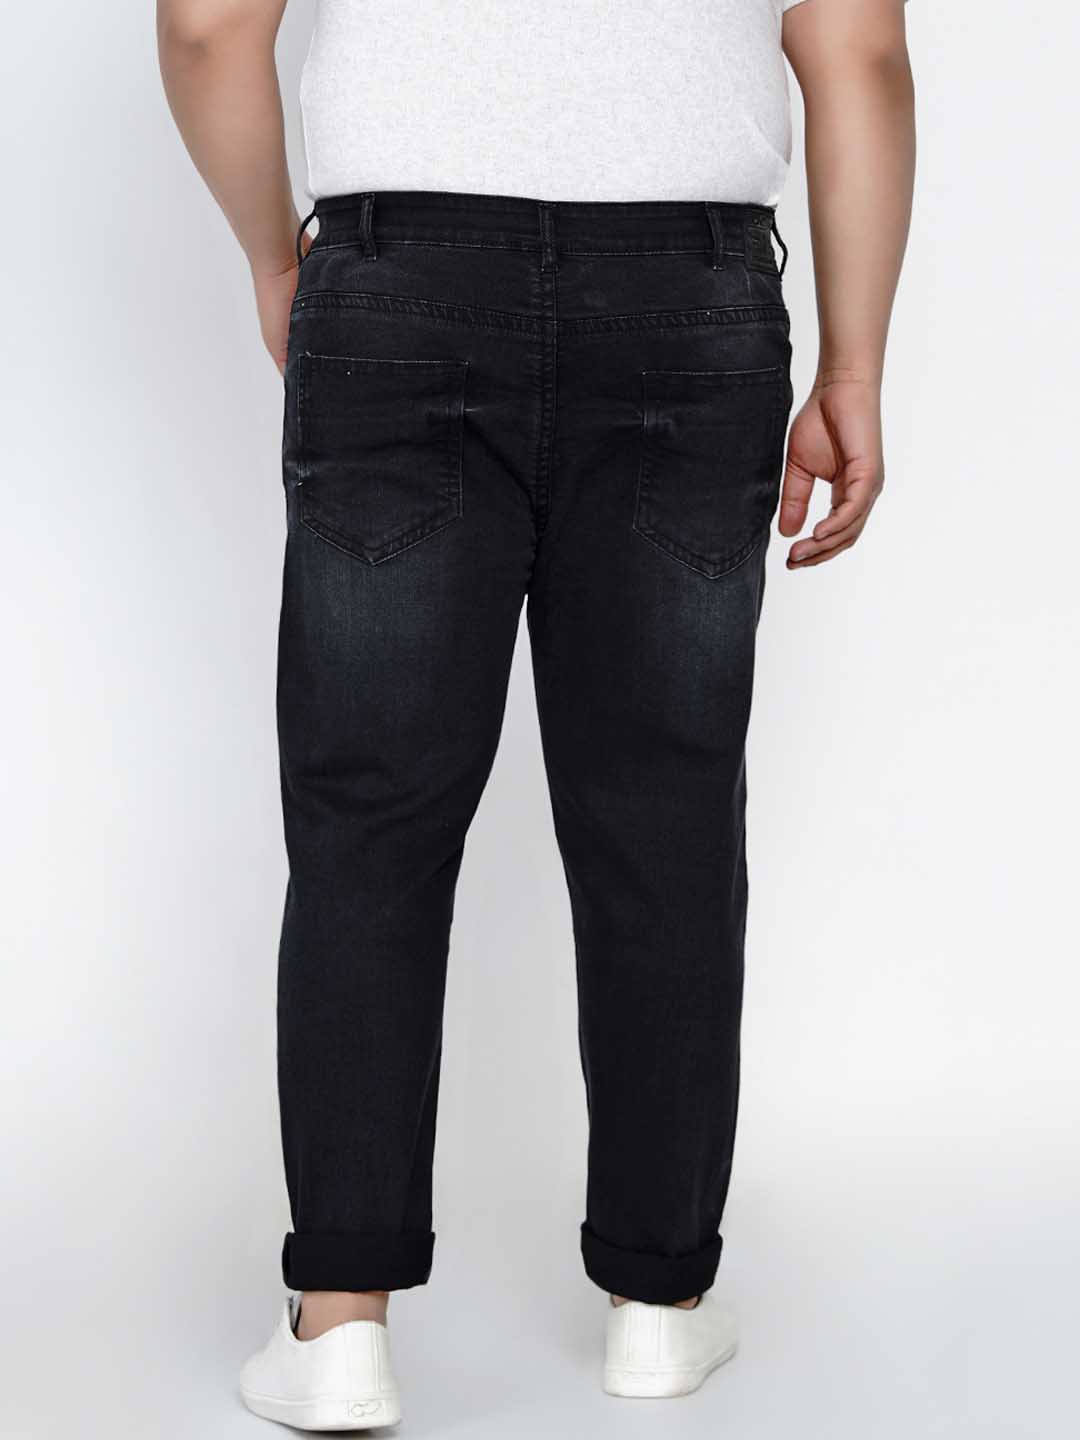 bottomwear/jeans/JPJ12136/jpj12136-5.jpg